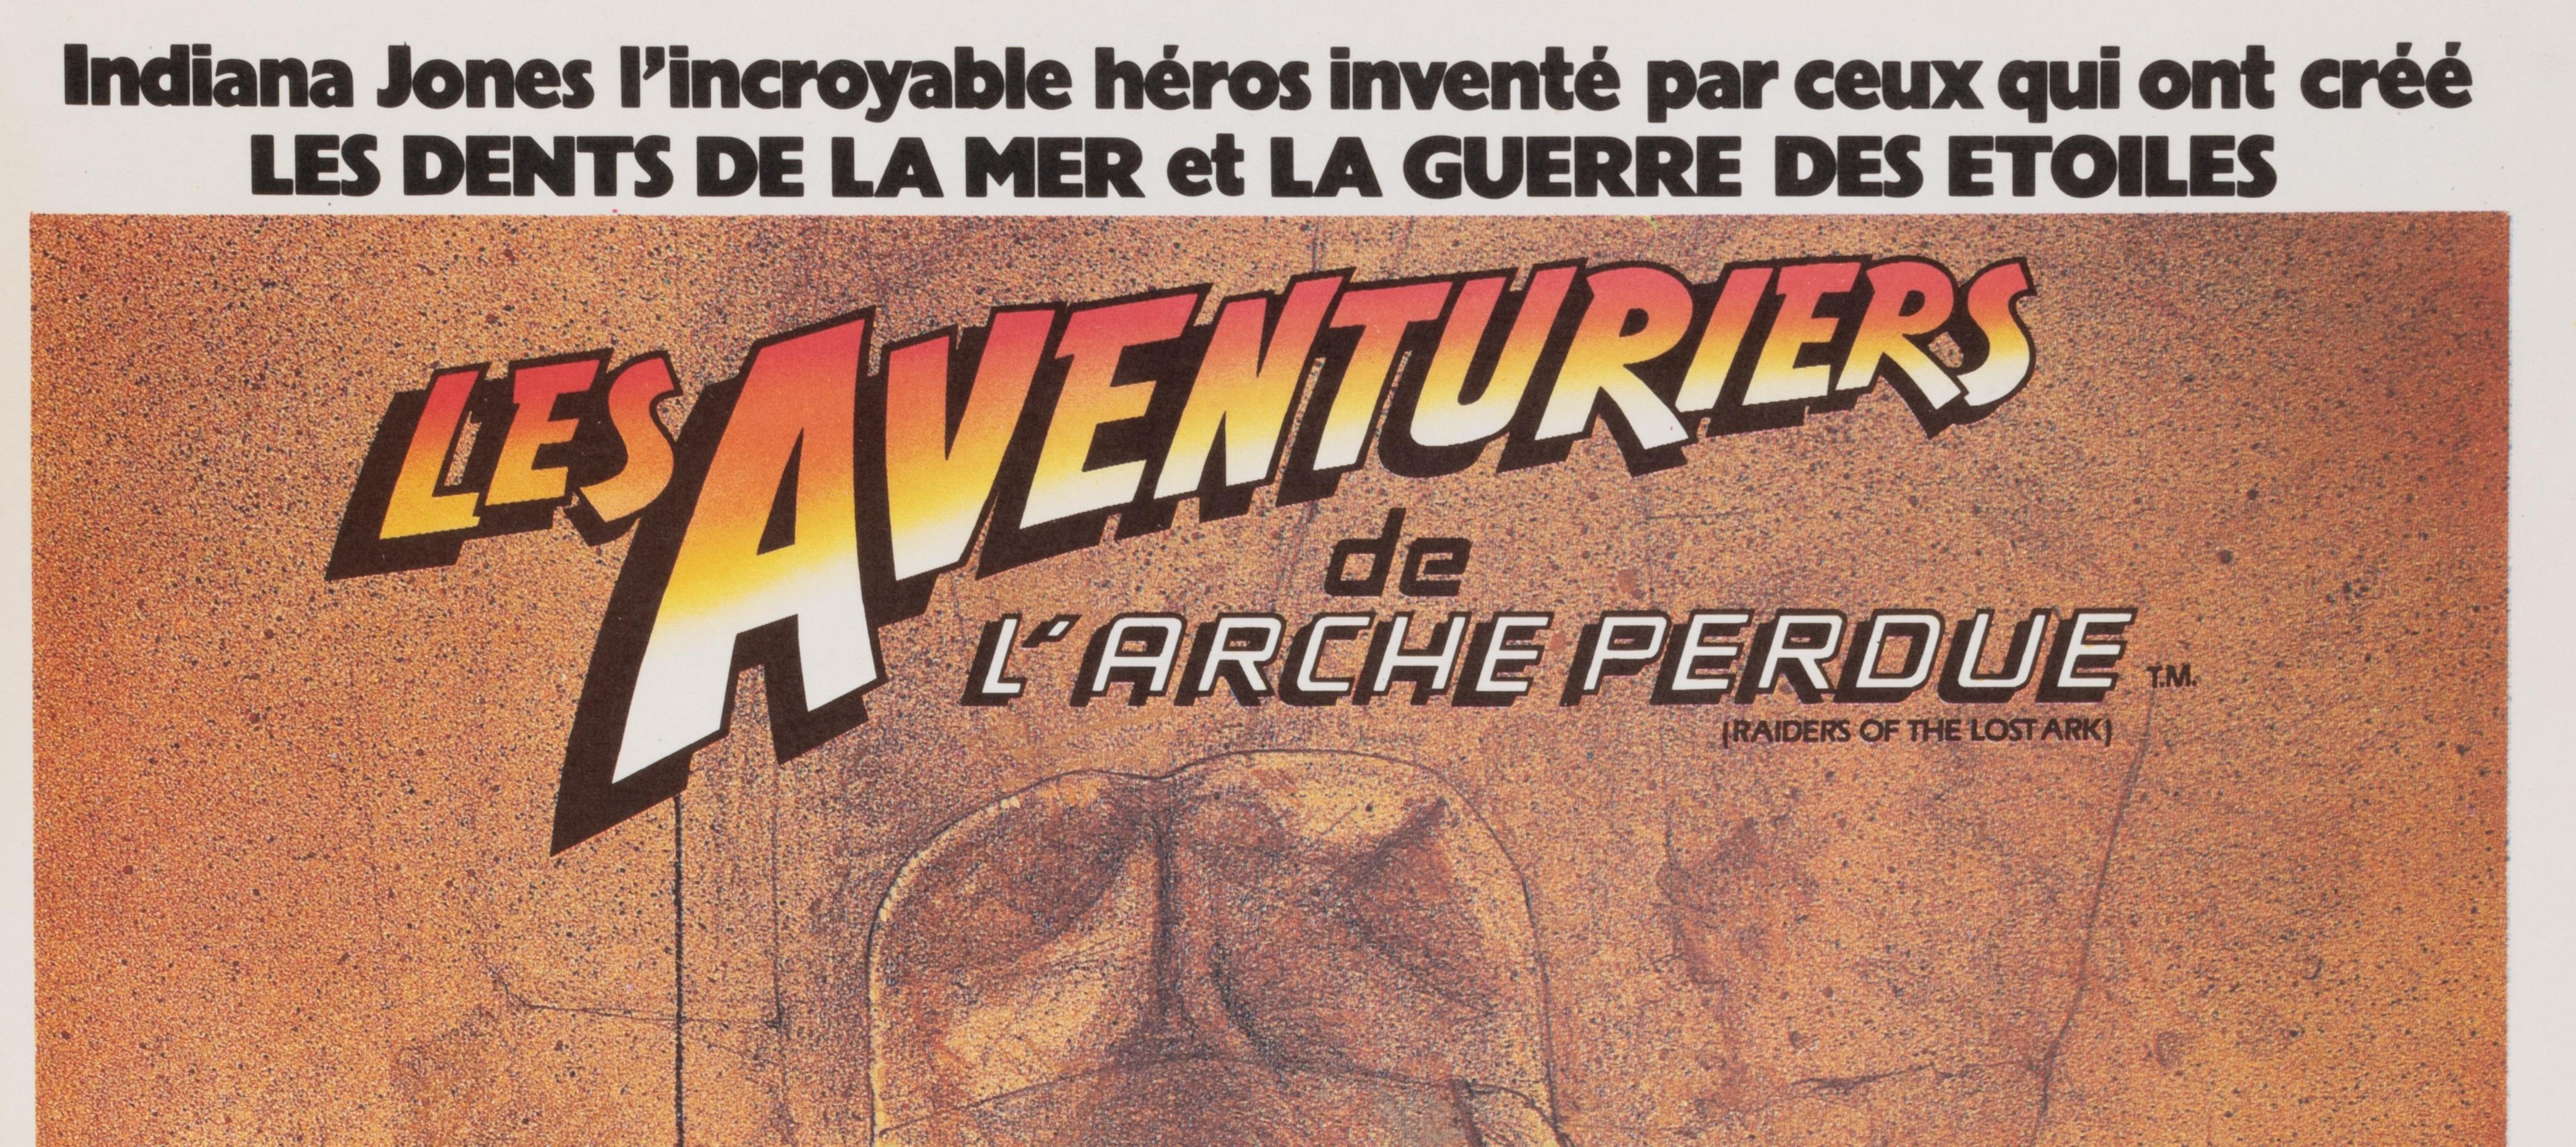 Original-Filmplakat für Raiders of the Lost Ark (Indiana Jones), erstellt von Amsel, um 1980.

Künstler: Anonym
Titel: Les aventures de l'arche perdue
Datum: 1981
Größe (B x H): 15,1 x 21,1 in / 38,3 x 53,6 cm
Drucker: Ste EXPL . Ets LALANDE COURBET